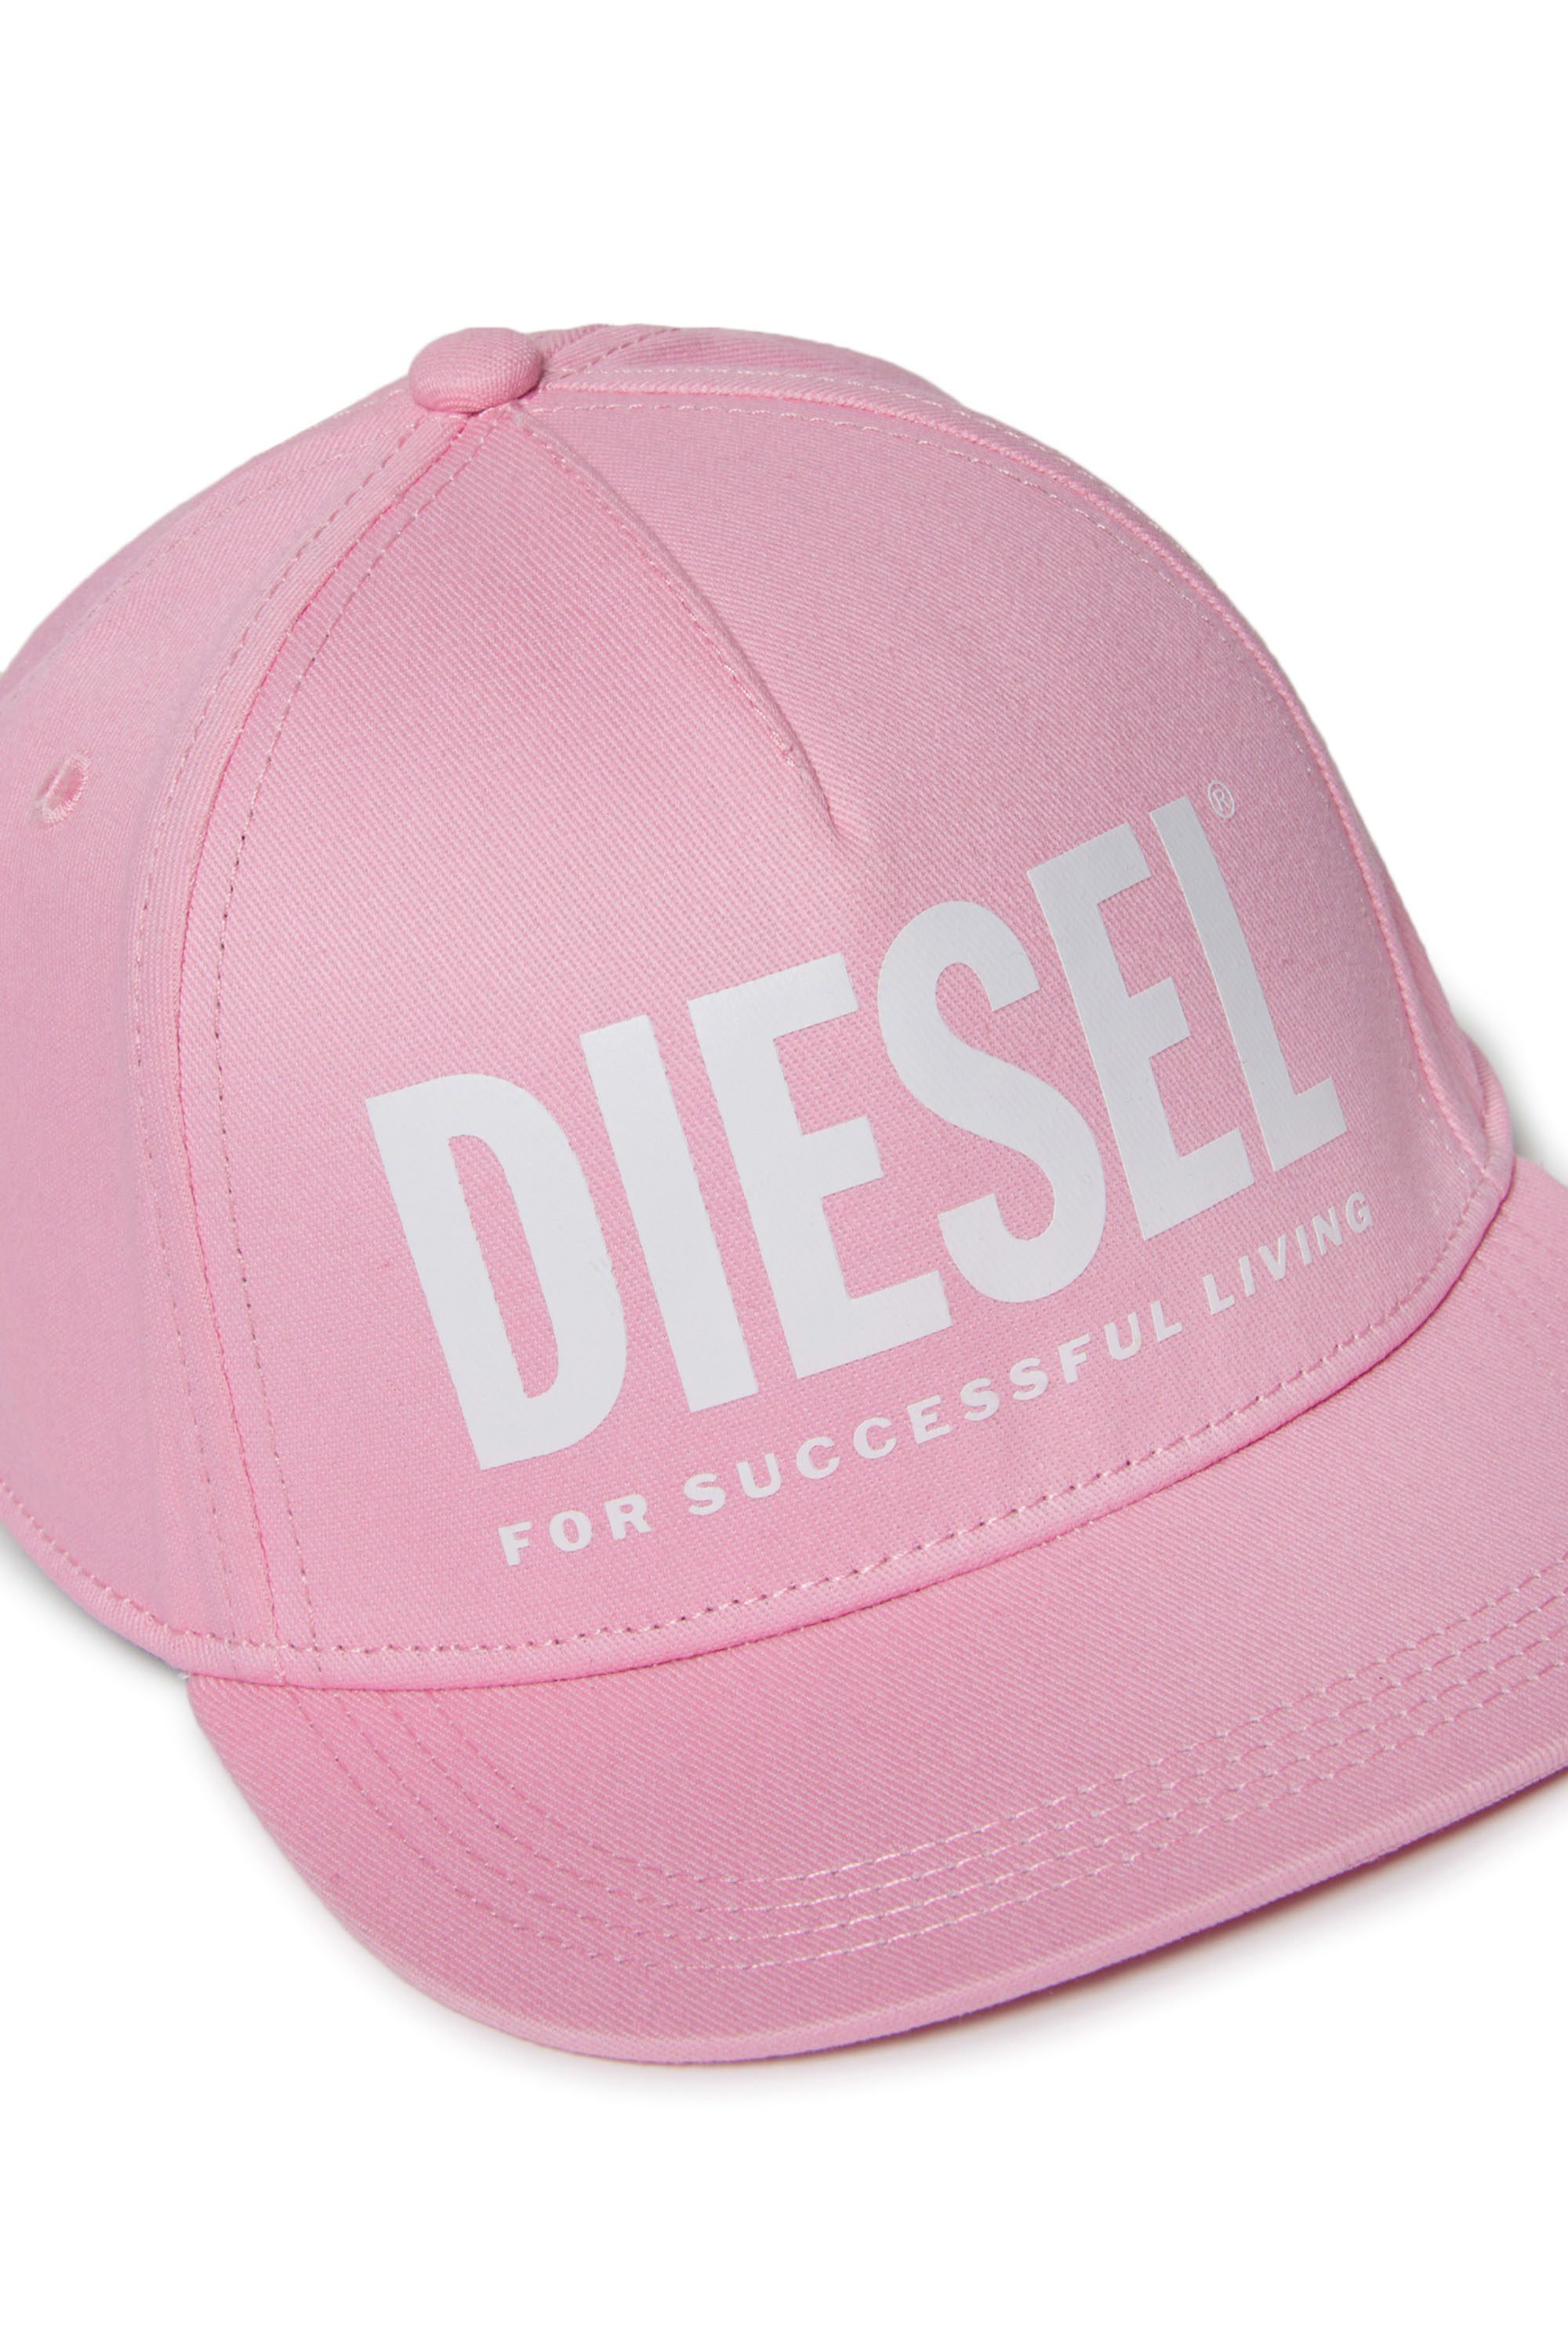 Diesel - FOLLY, Rose - Image 3